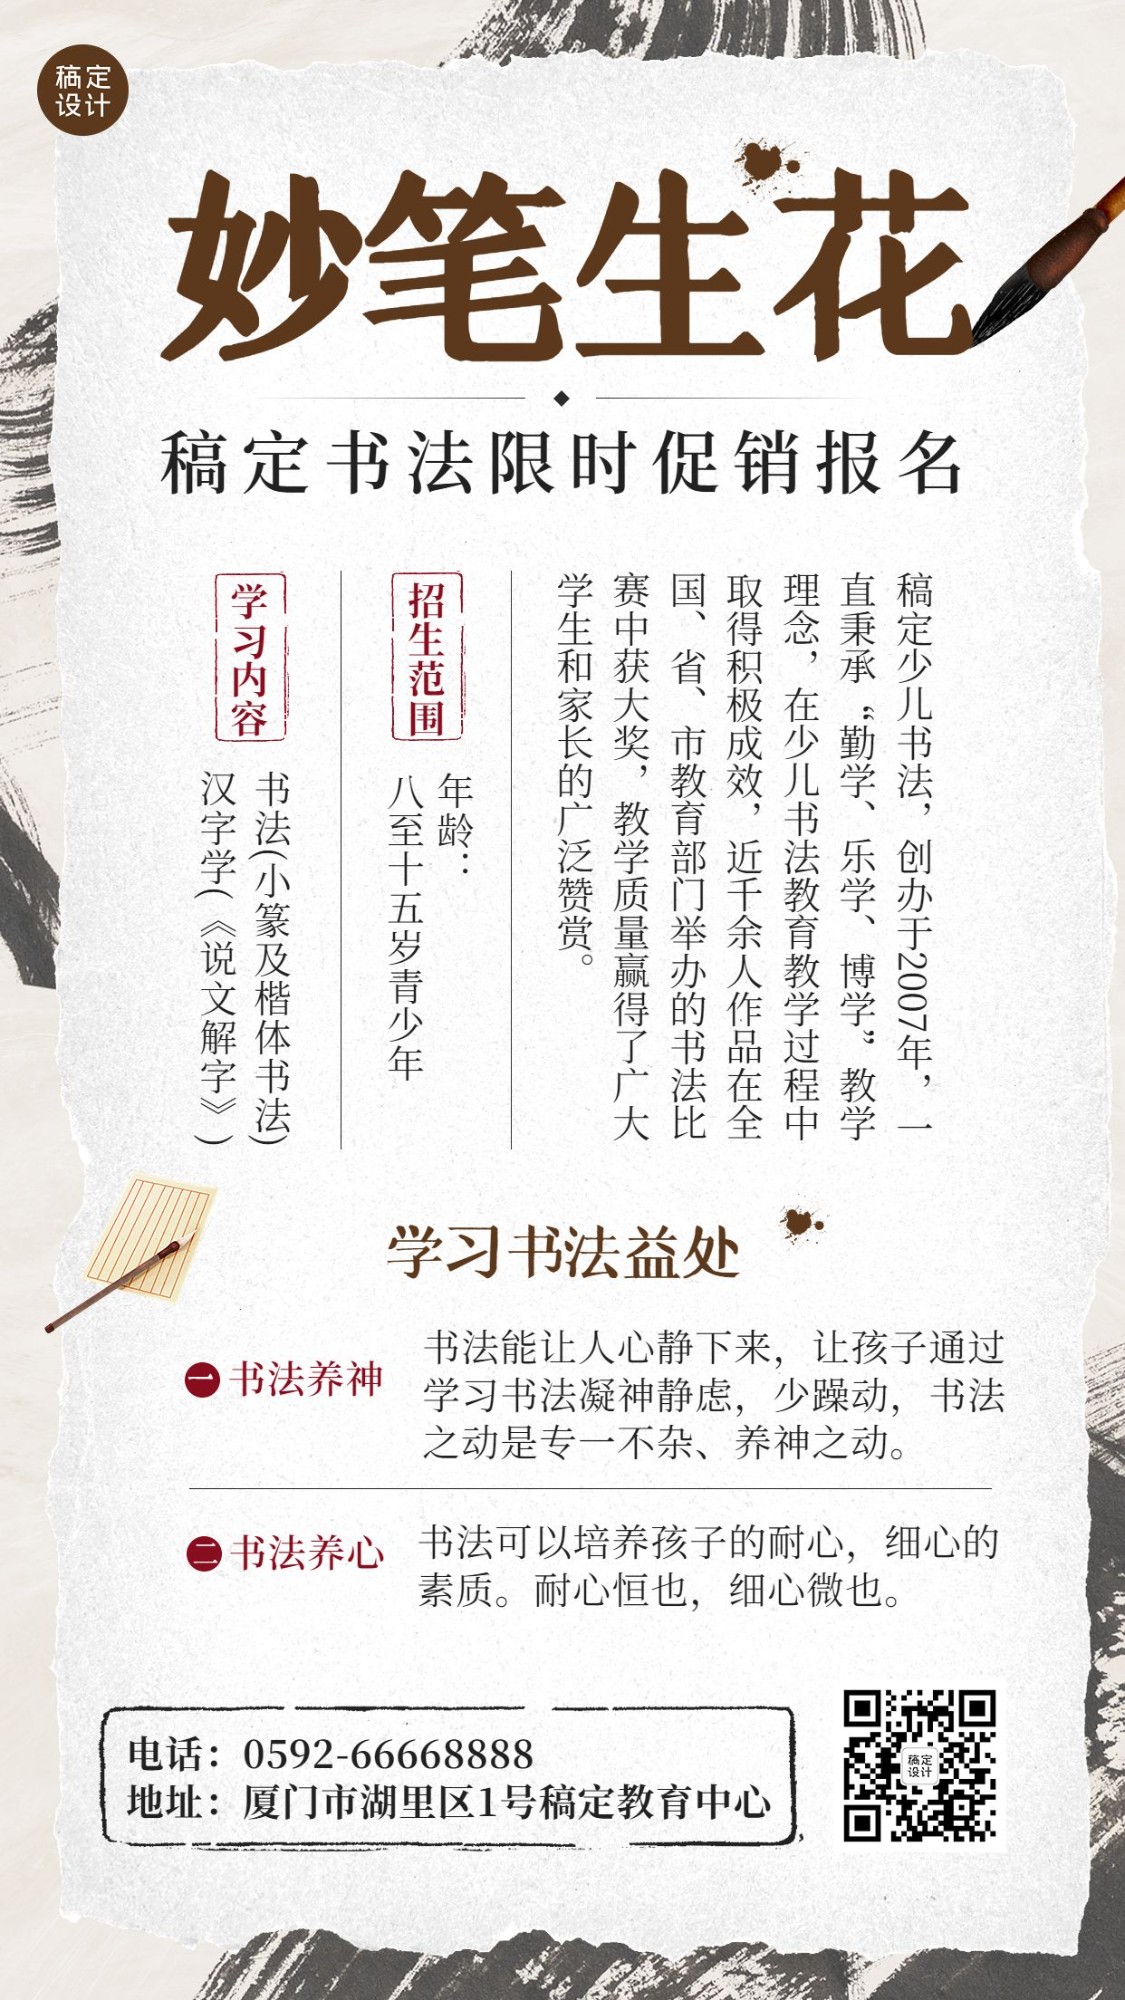 少儿书法课程招生宣传中国风手机海报预览效果